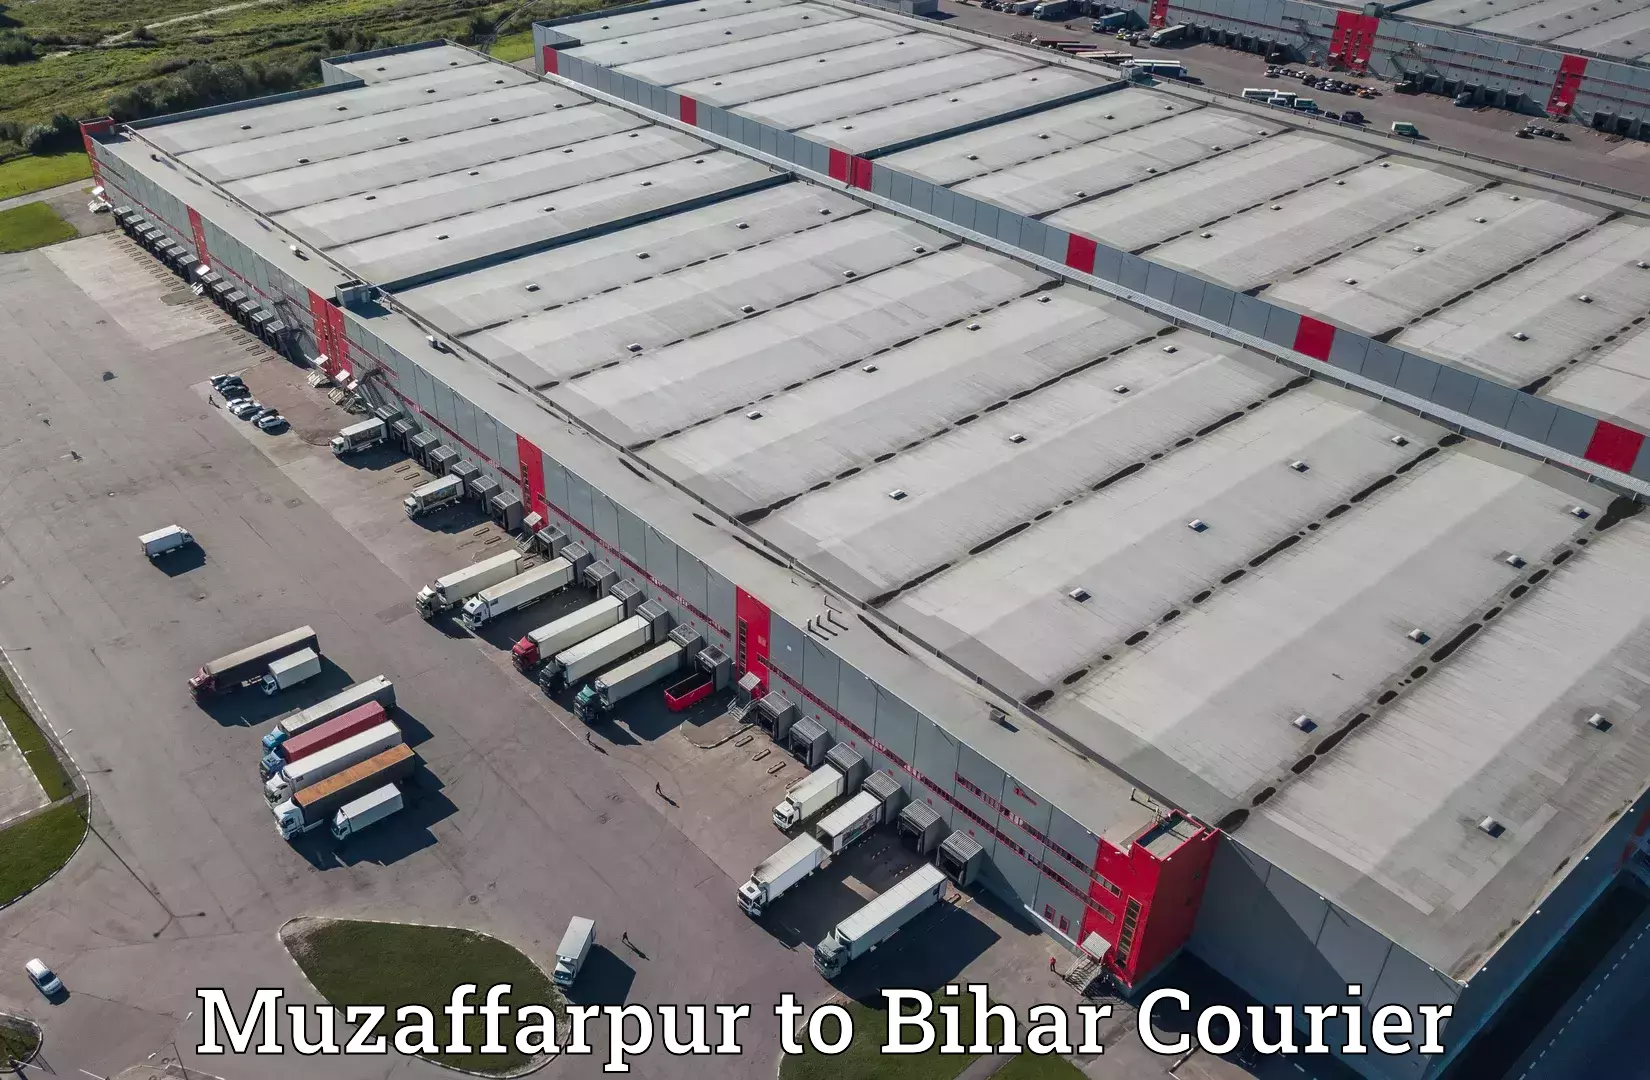 Business delivery service Muzaffarpur to Bhojpur